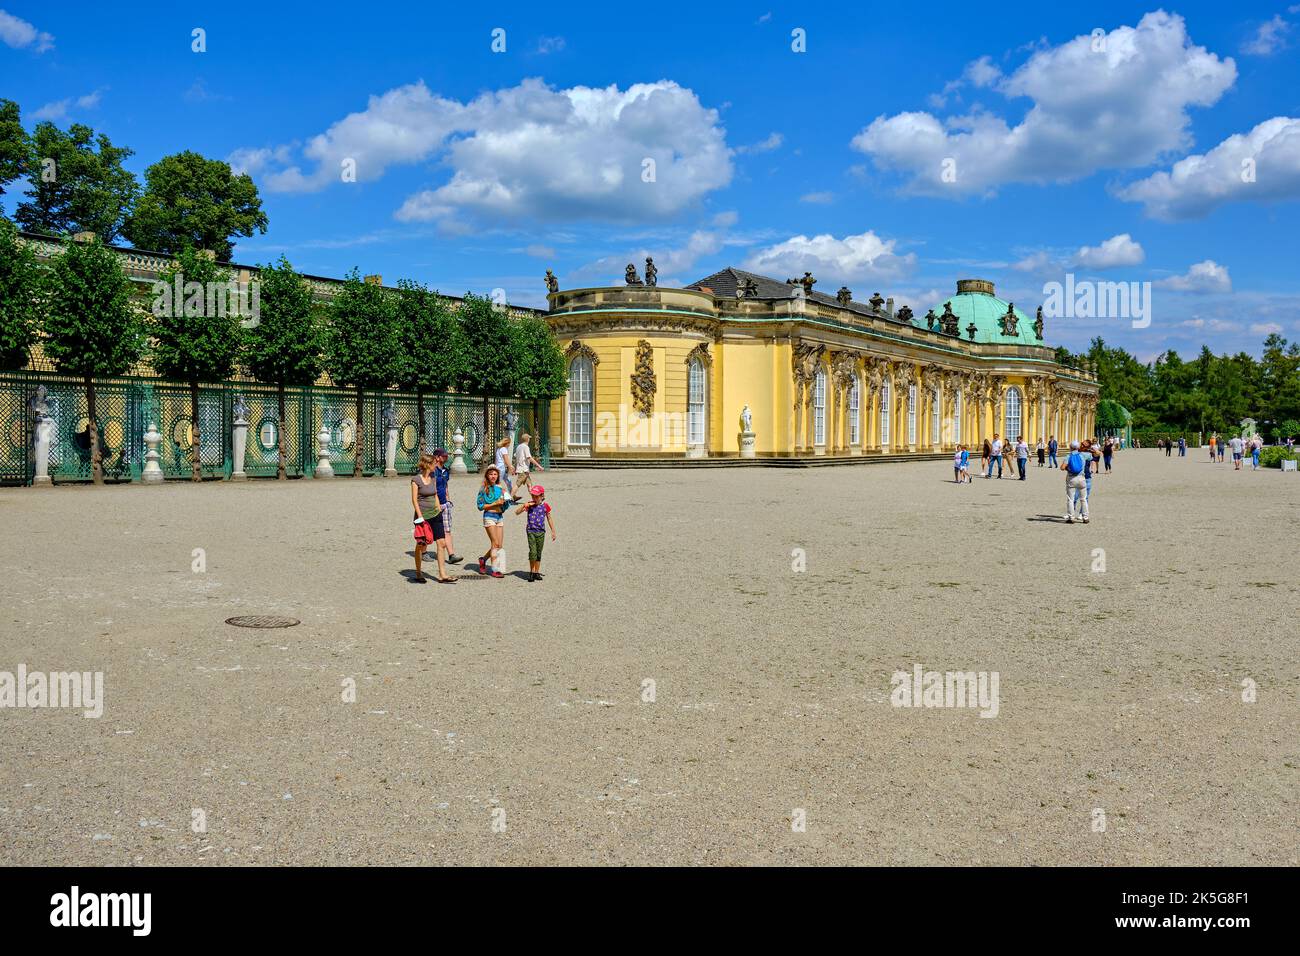 Situation touristique du côté sud du palais de Sanssouci, édifice baroque prussien, parc de Sanssouci, Potsdam, Brandebourg, Allemagne. Banque D'Images